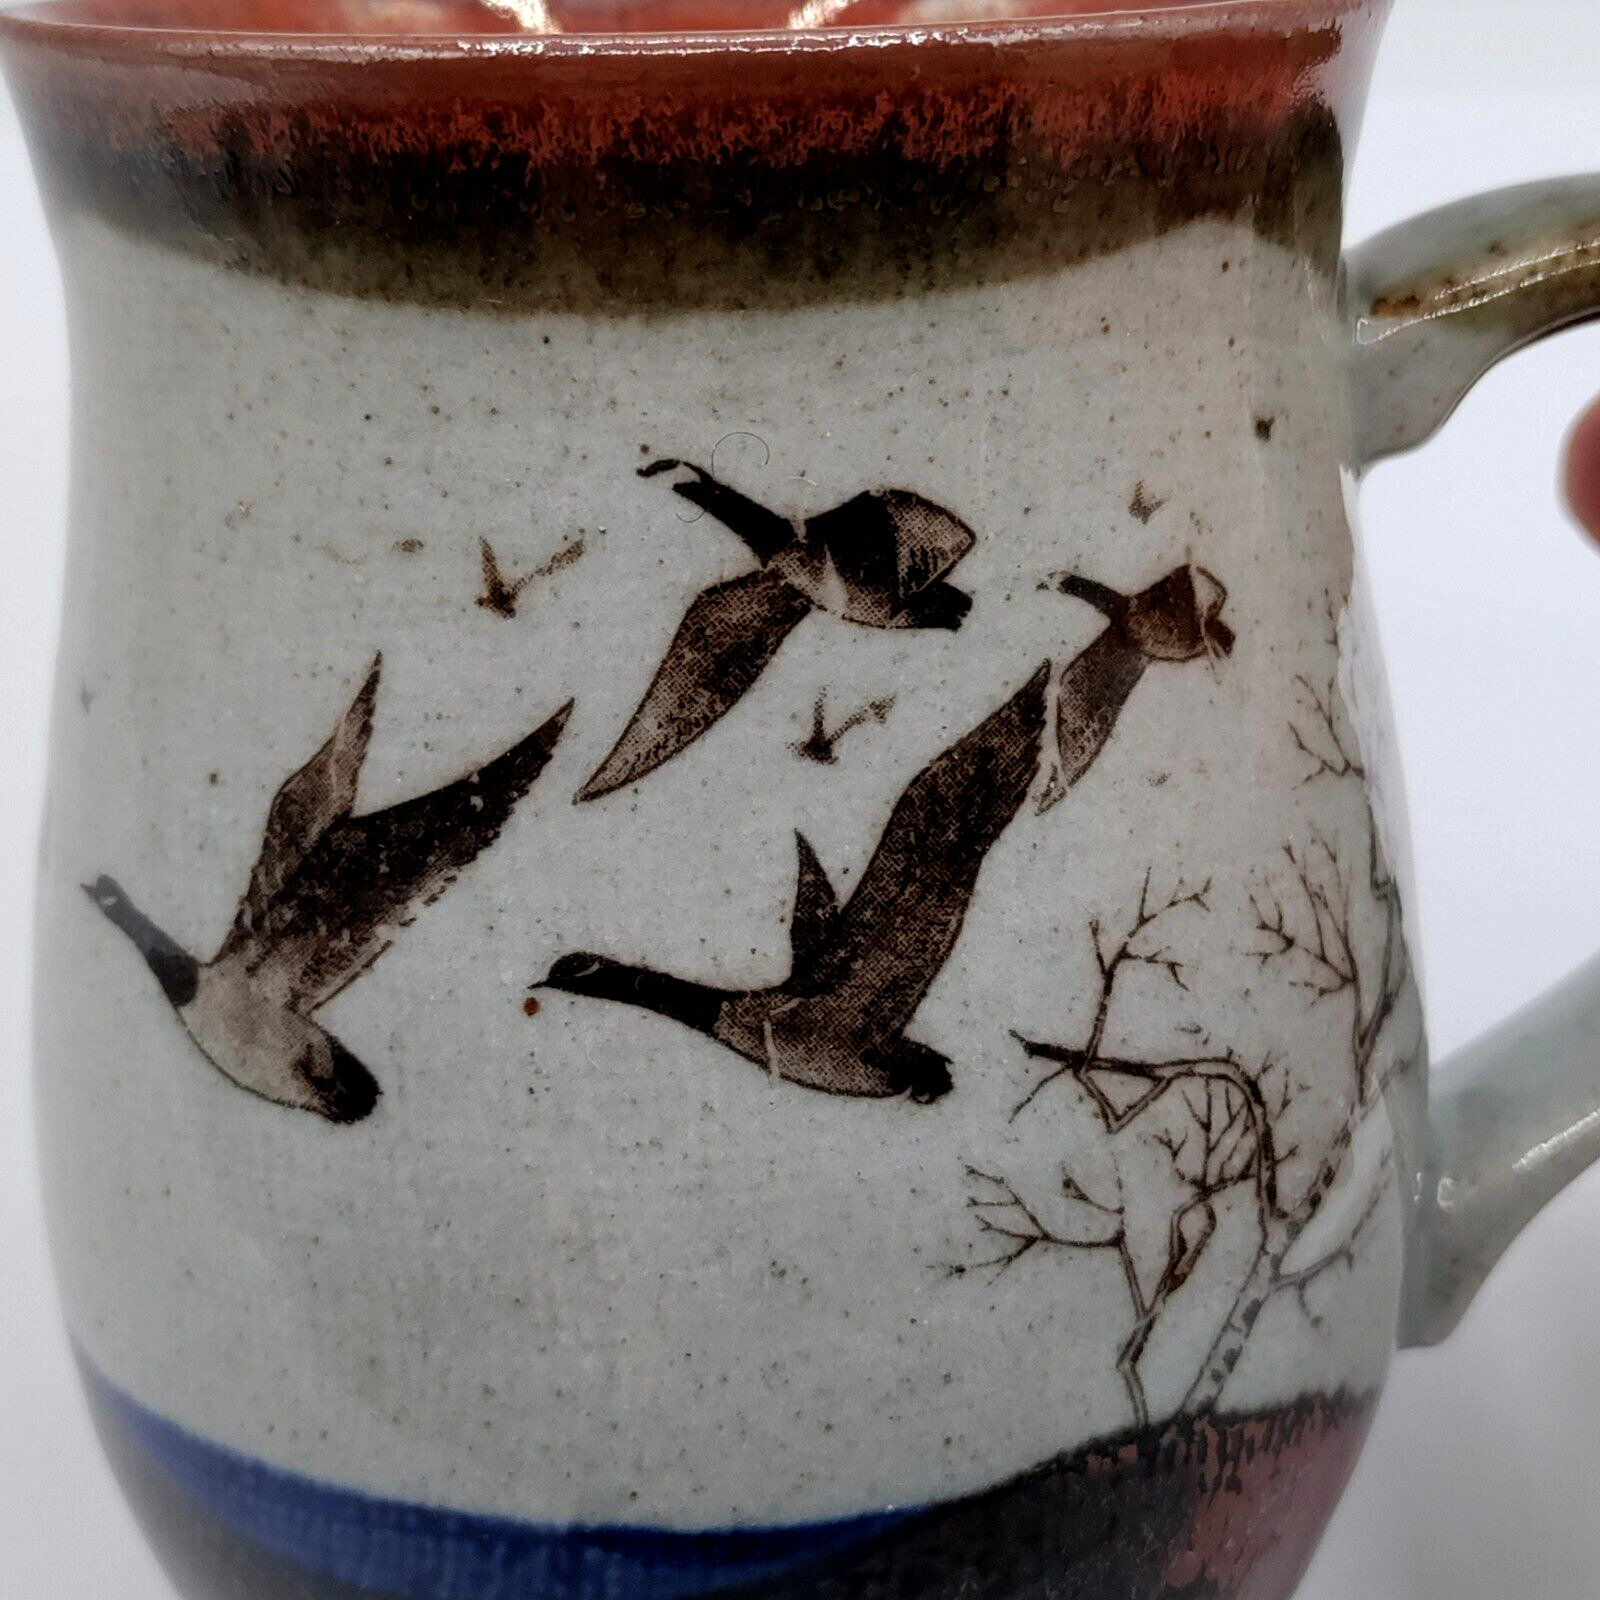 VTG Otagiri Style Coffee Tea Mug Stoneware Cup Drip Glazed Geese Grey Brown Blue